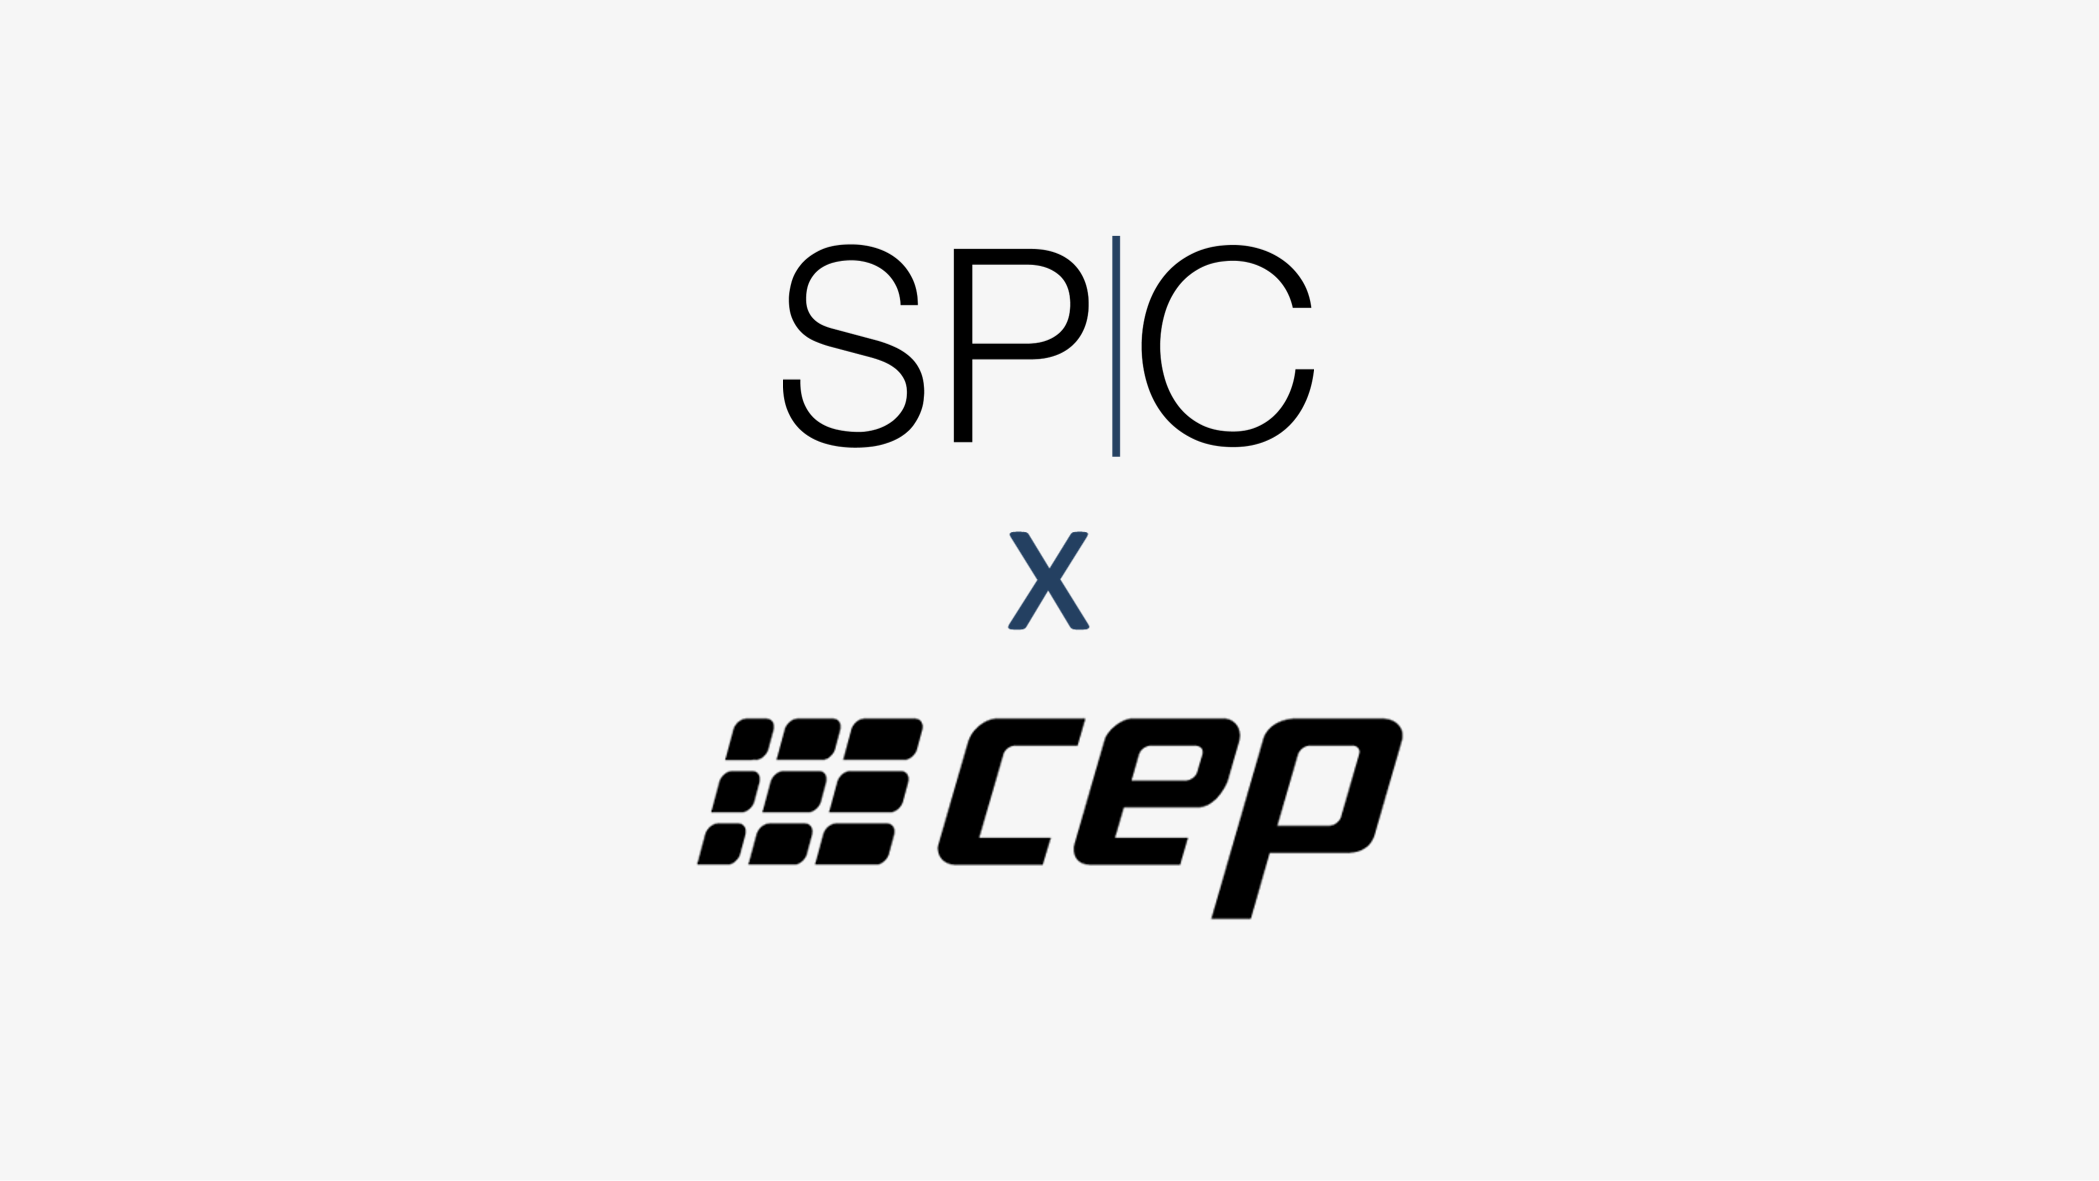 CEPxSPC_V7